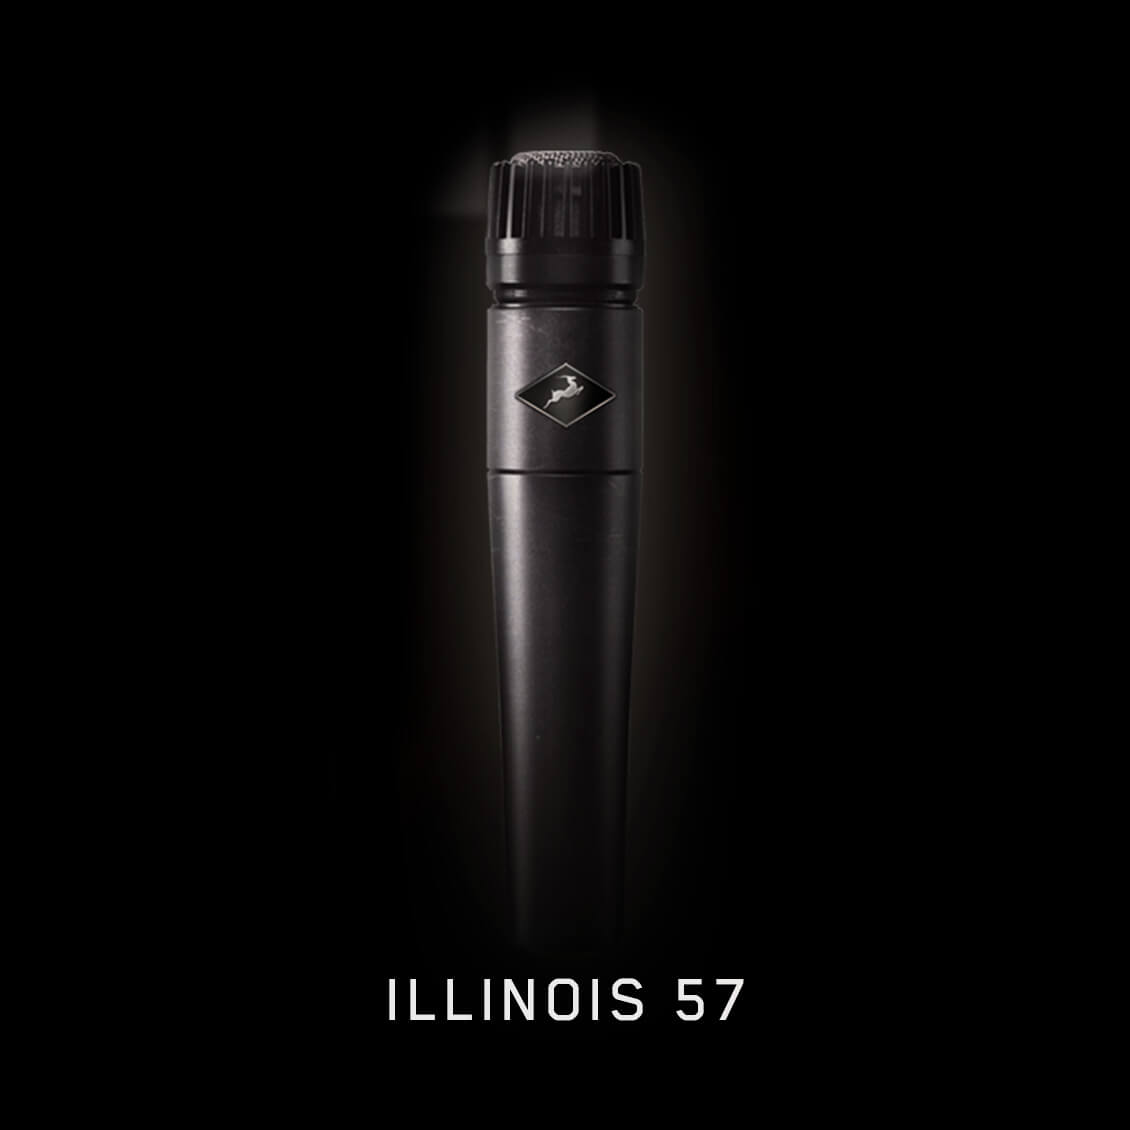 Illinois 57